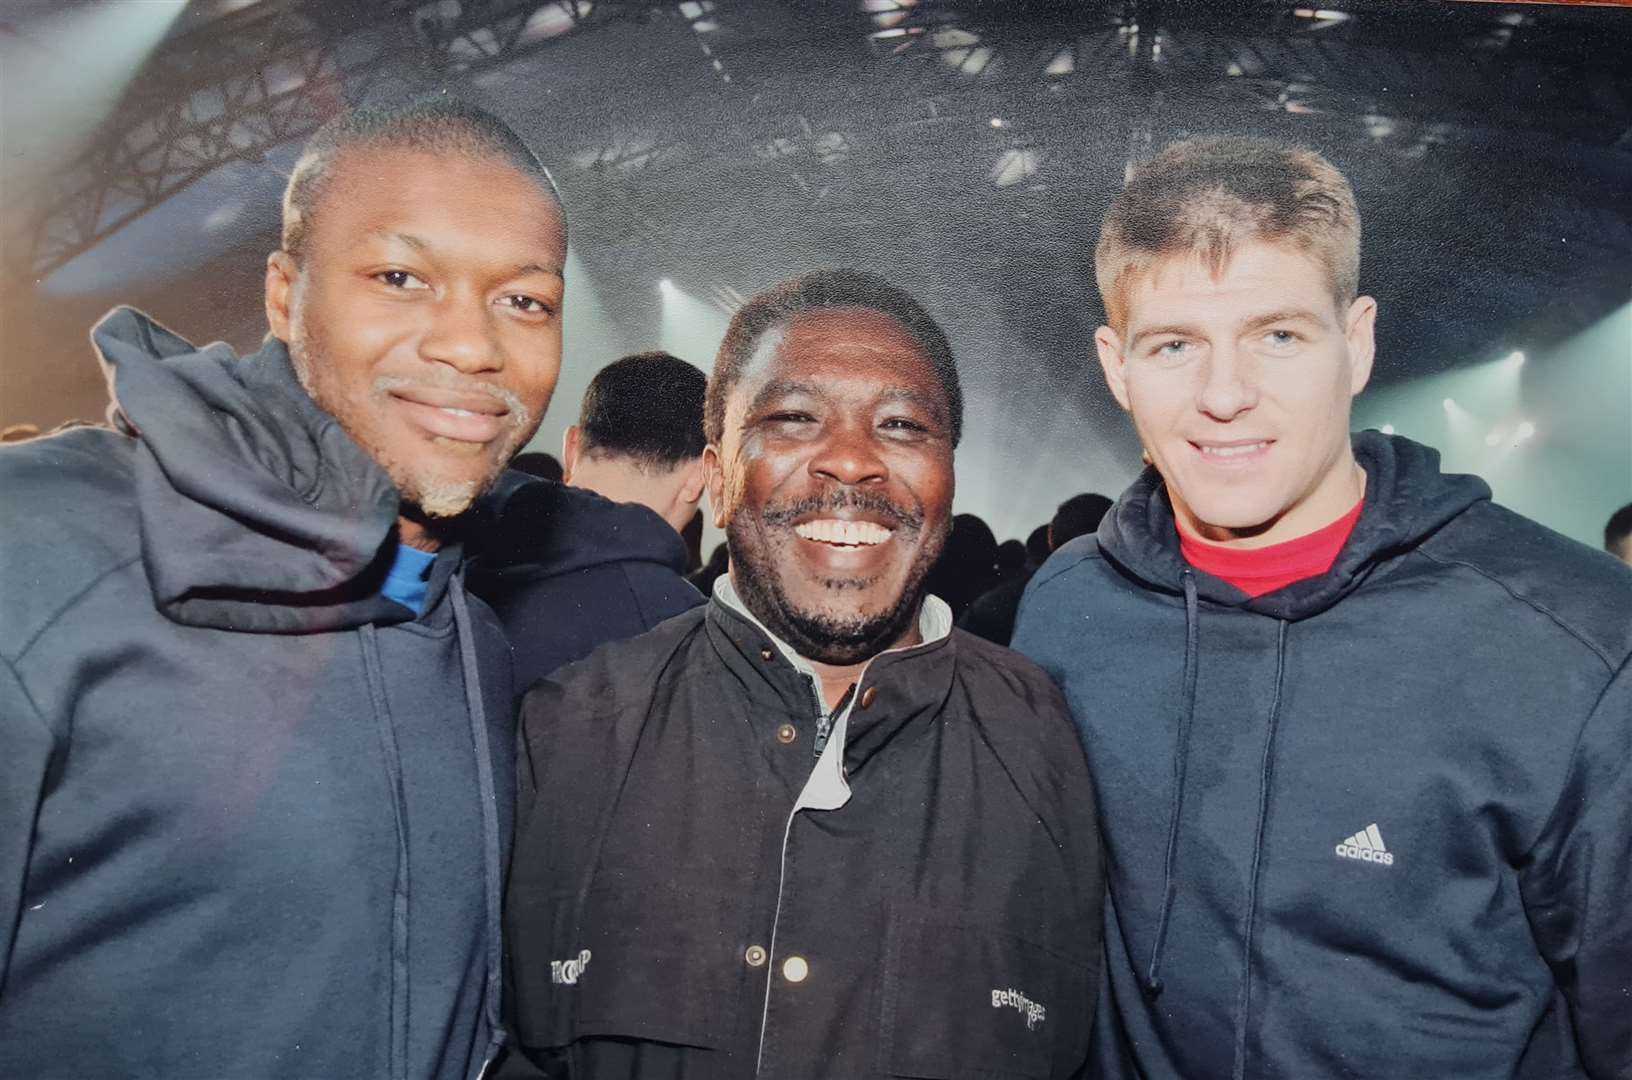 John rubs shoulders with Liverpool FC stars Steven Gerrard and Djibril Cissé